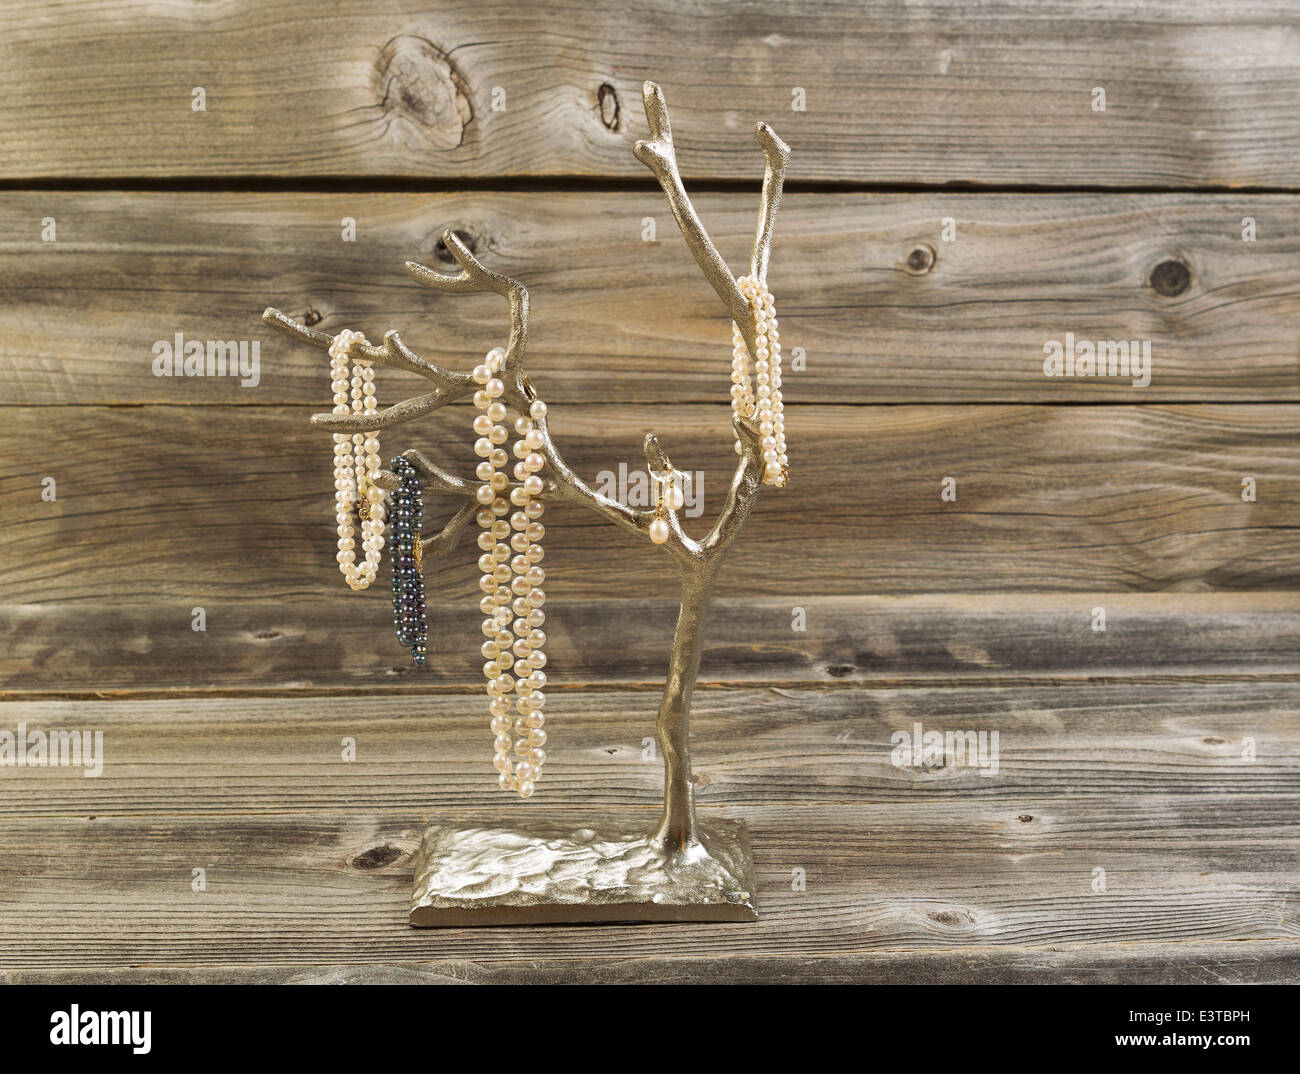 Vista frontale immagine di perle naturali su metallo cromato con struttura in legno rustico in background Foto Stock